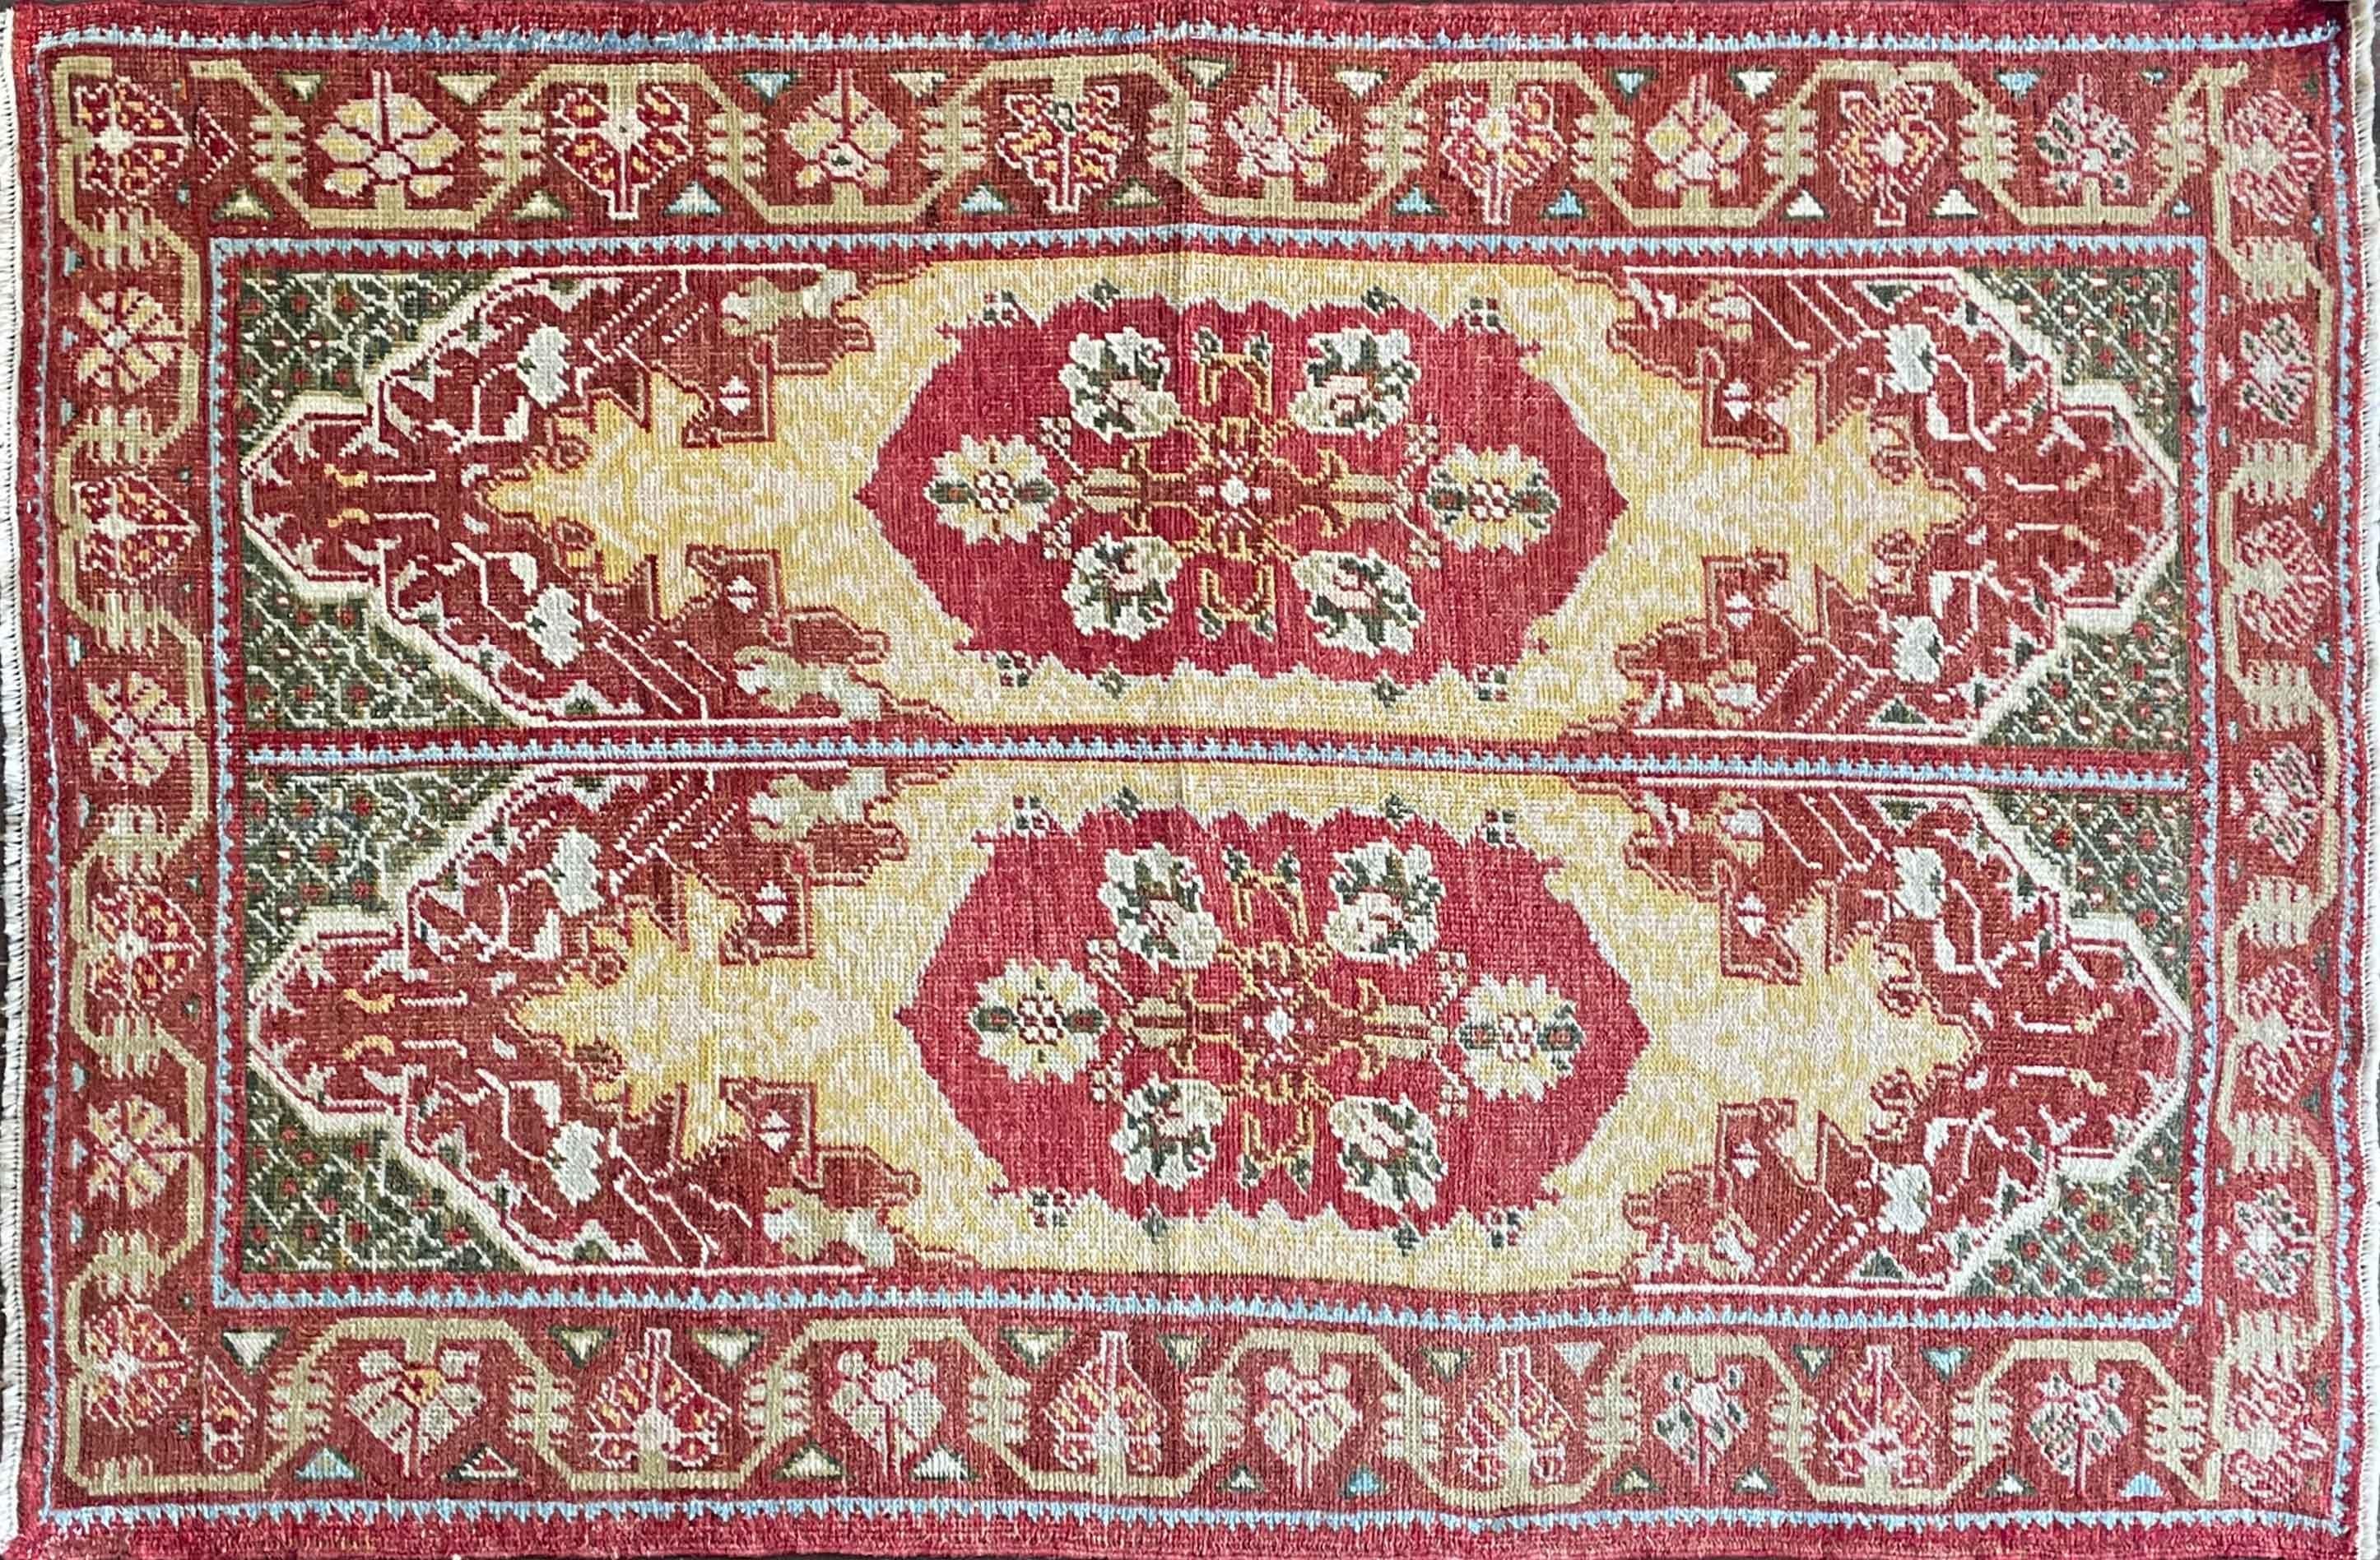 
Treten Sie ein in die fesselnde Anziehungskraft eines antiken türkischen Oushak-Teppichs, der eine beeindruckende Größe von 4'4